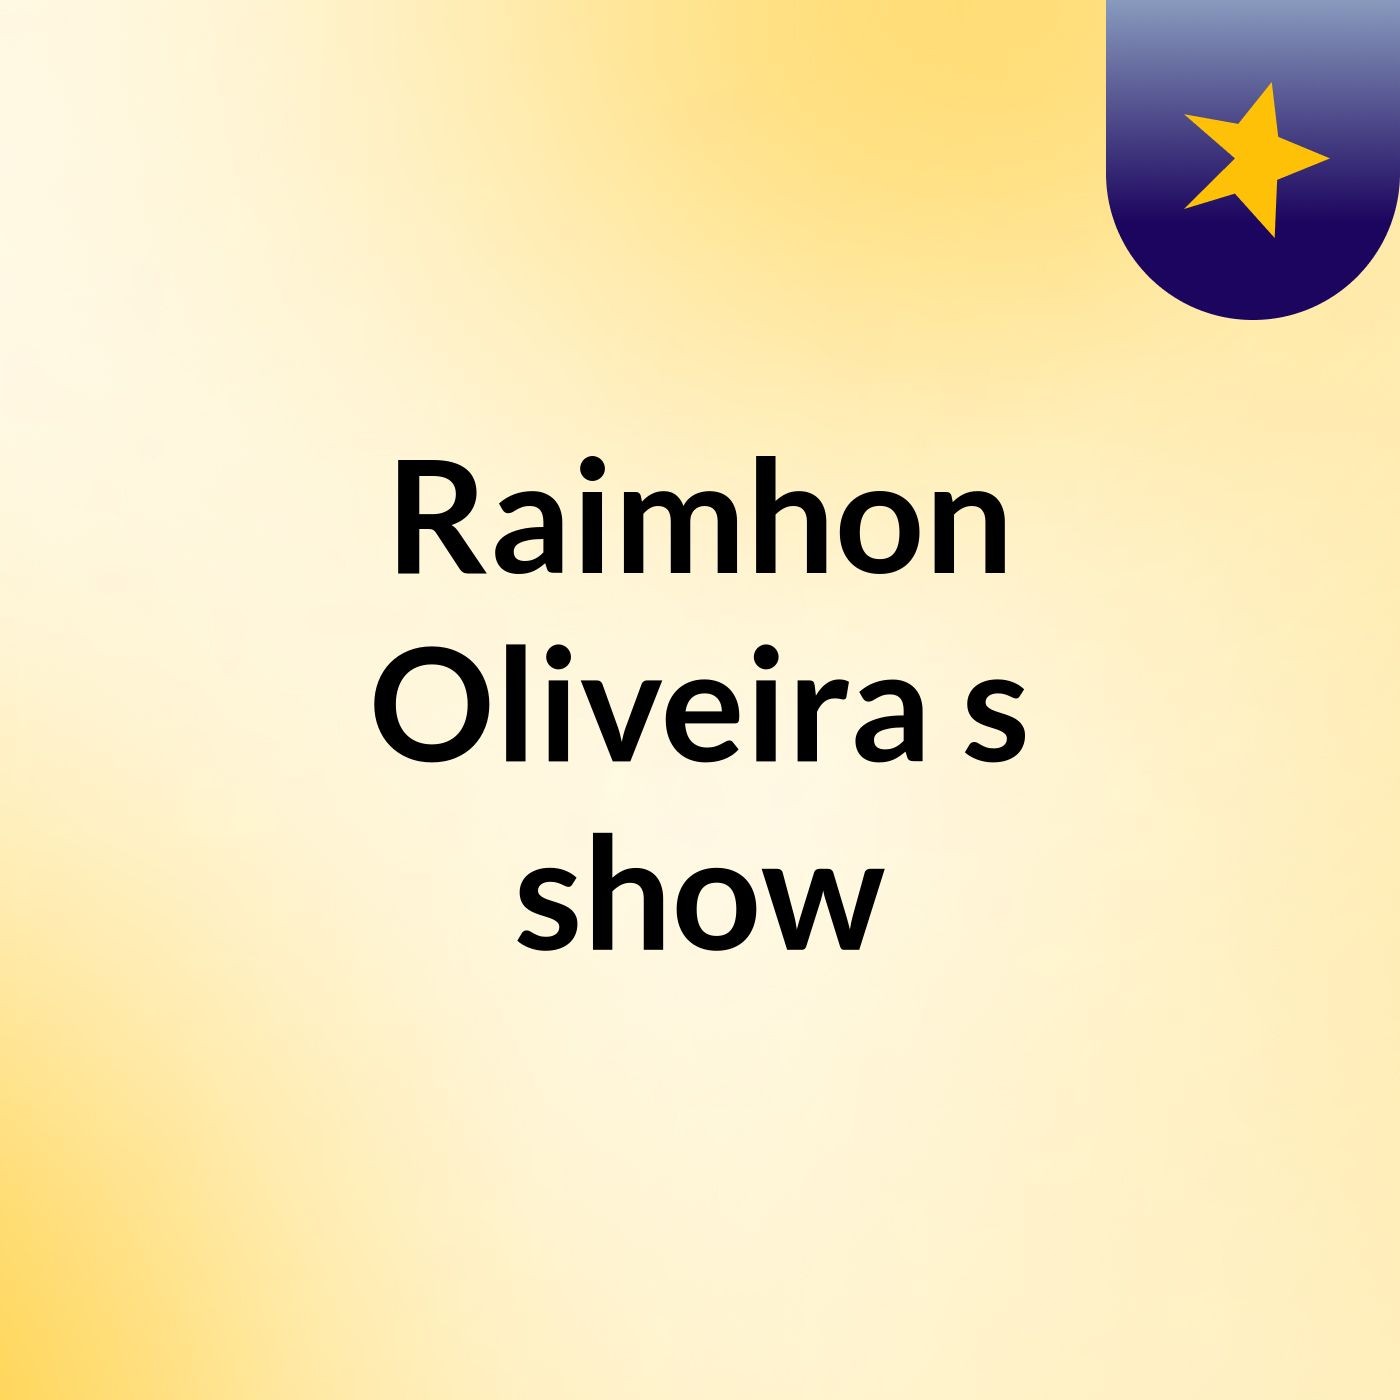 Raimhon Oliveira's show